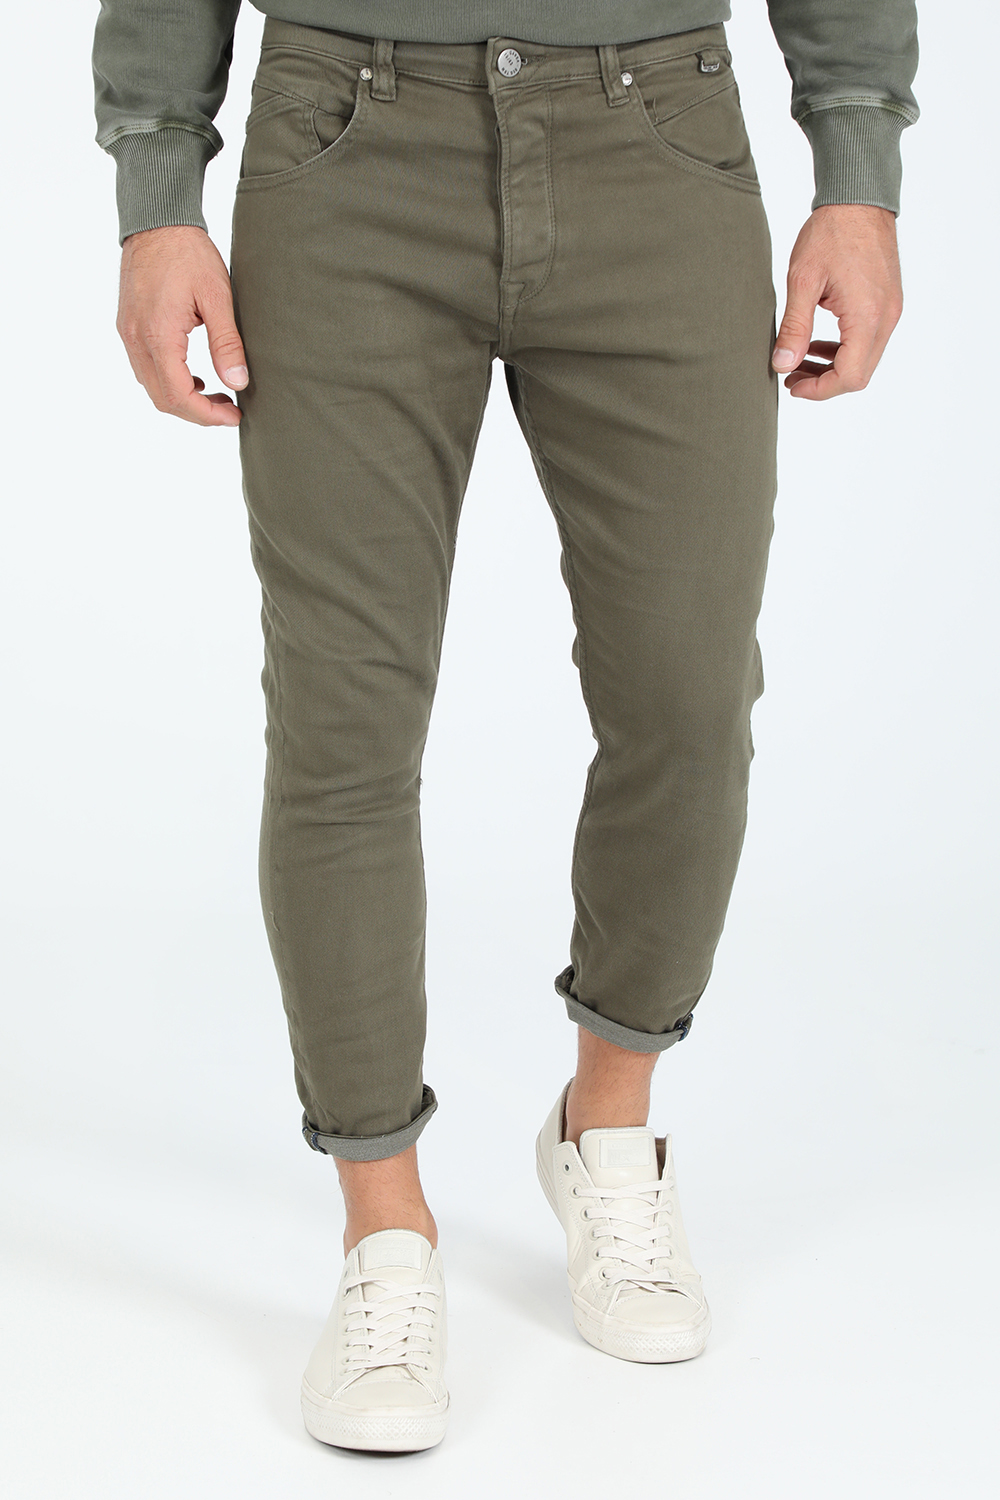 Ανδρικά/Ρούχα/Τζίν/Skinny GABBA - Ανδρικό jean παντελόνι GABBA Alex K3995 πράσινο